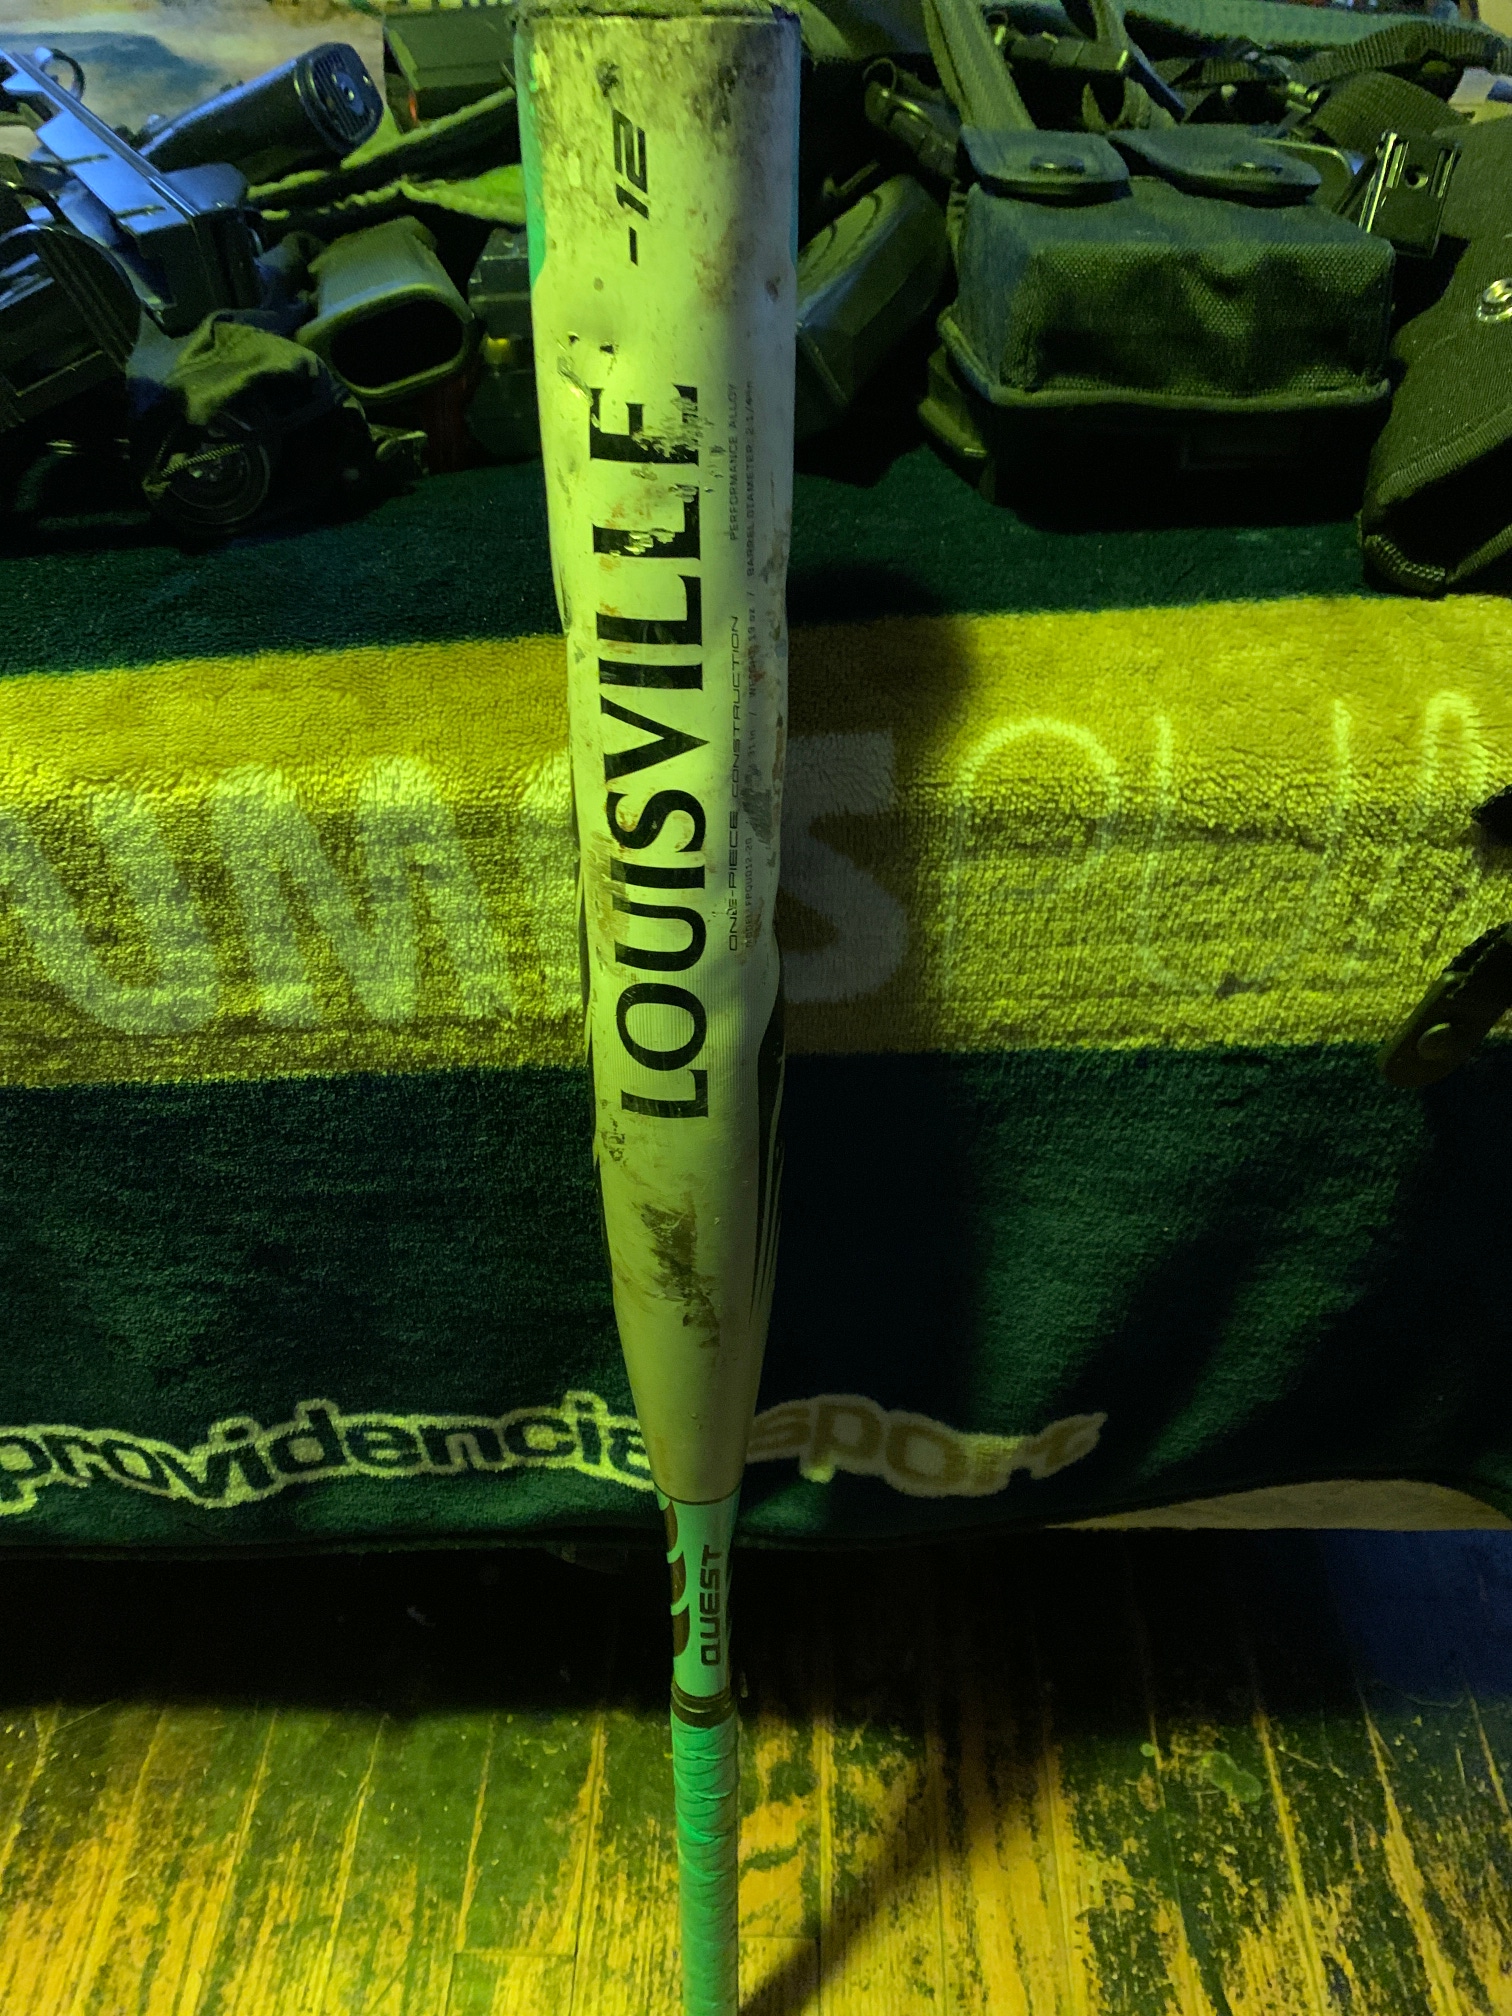 Used Louisville Slugger Bat